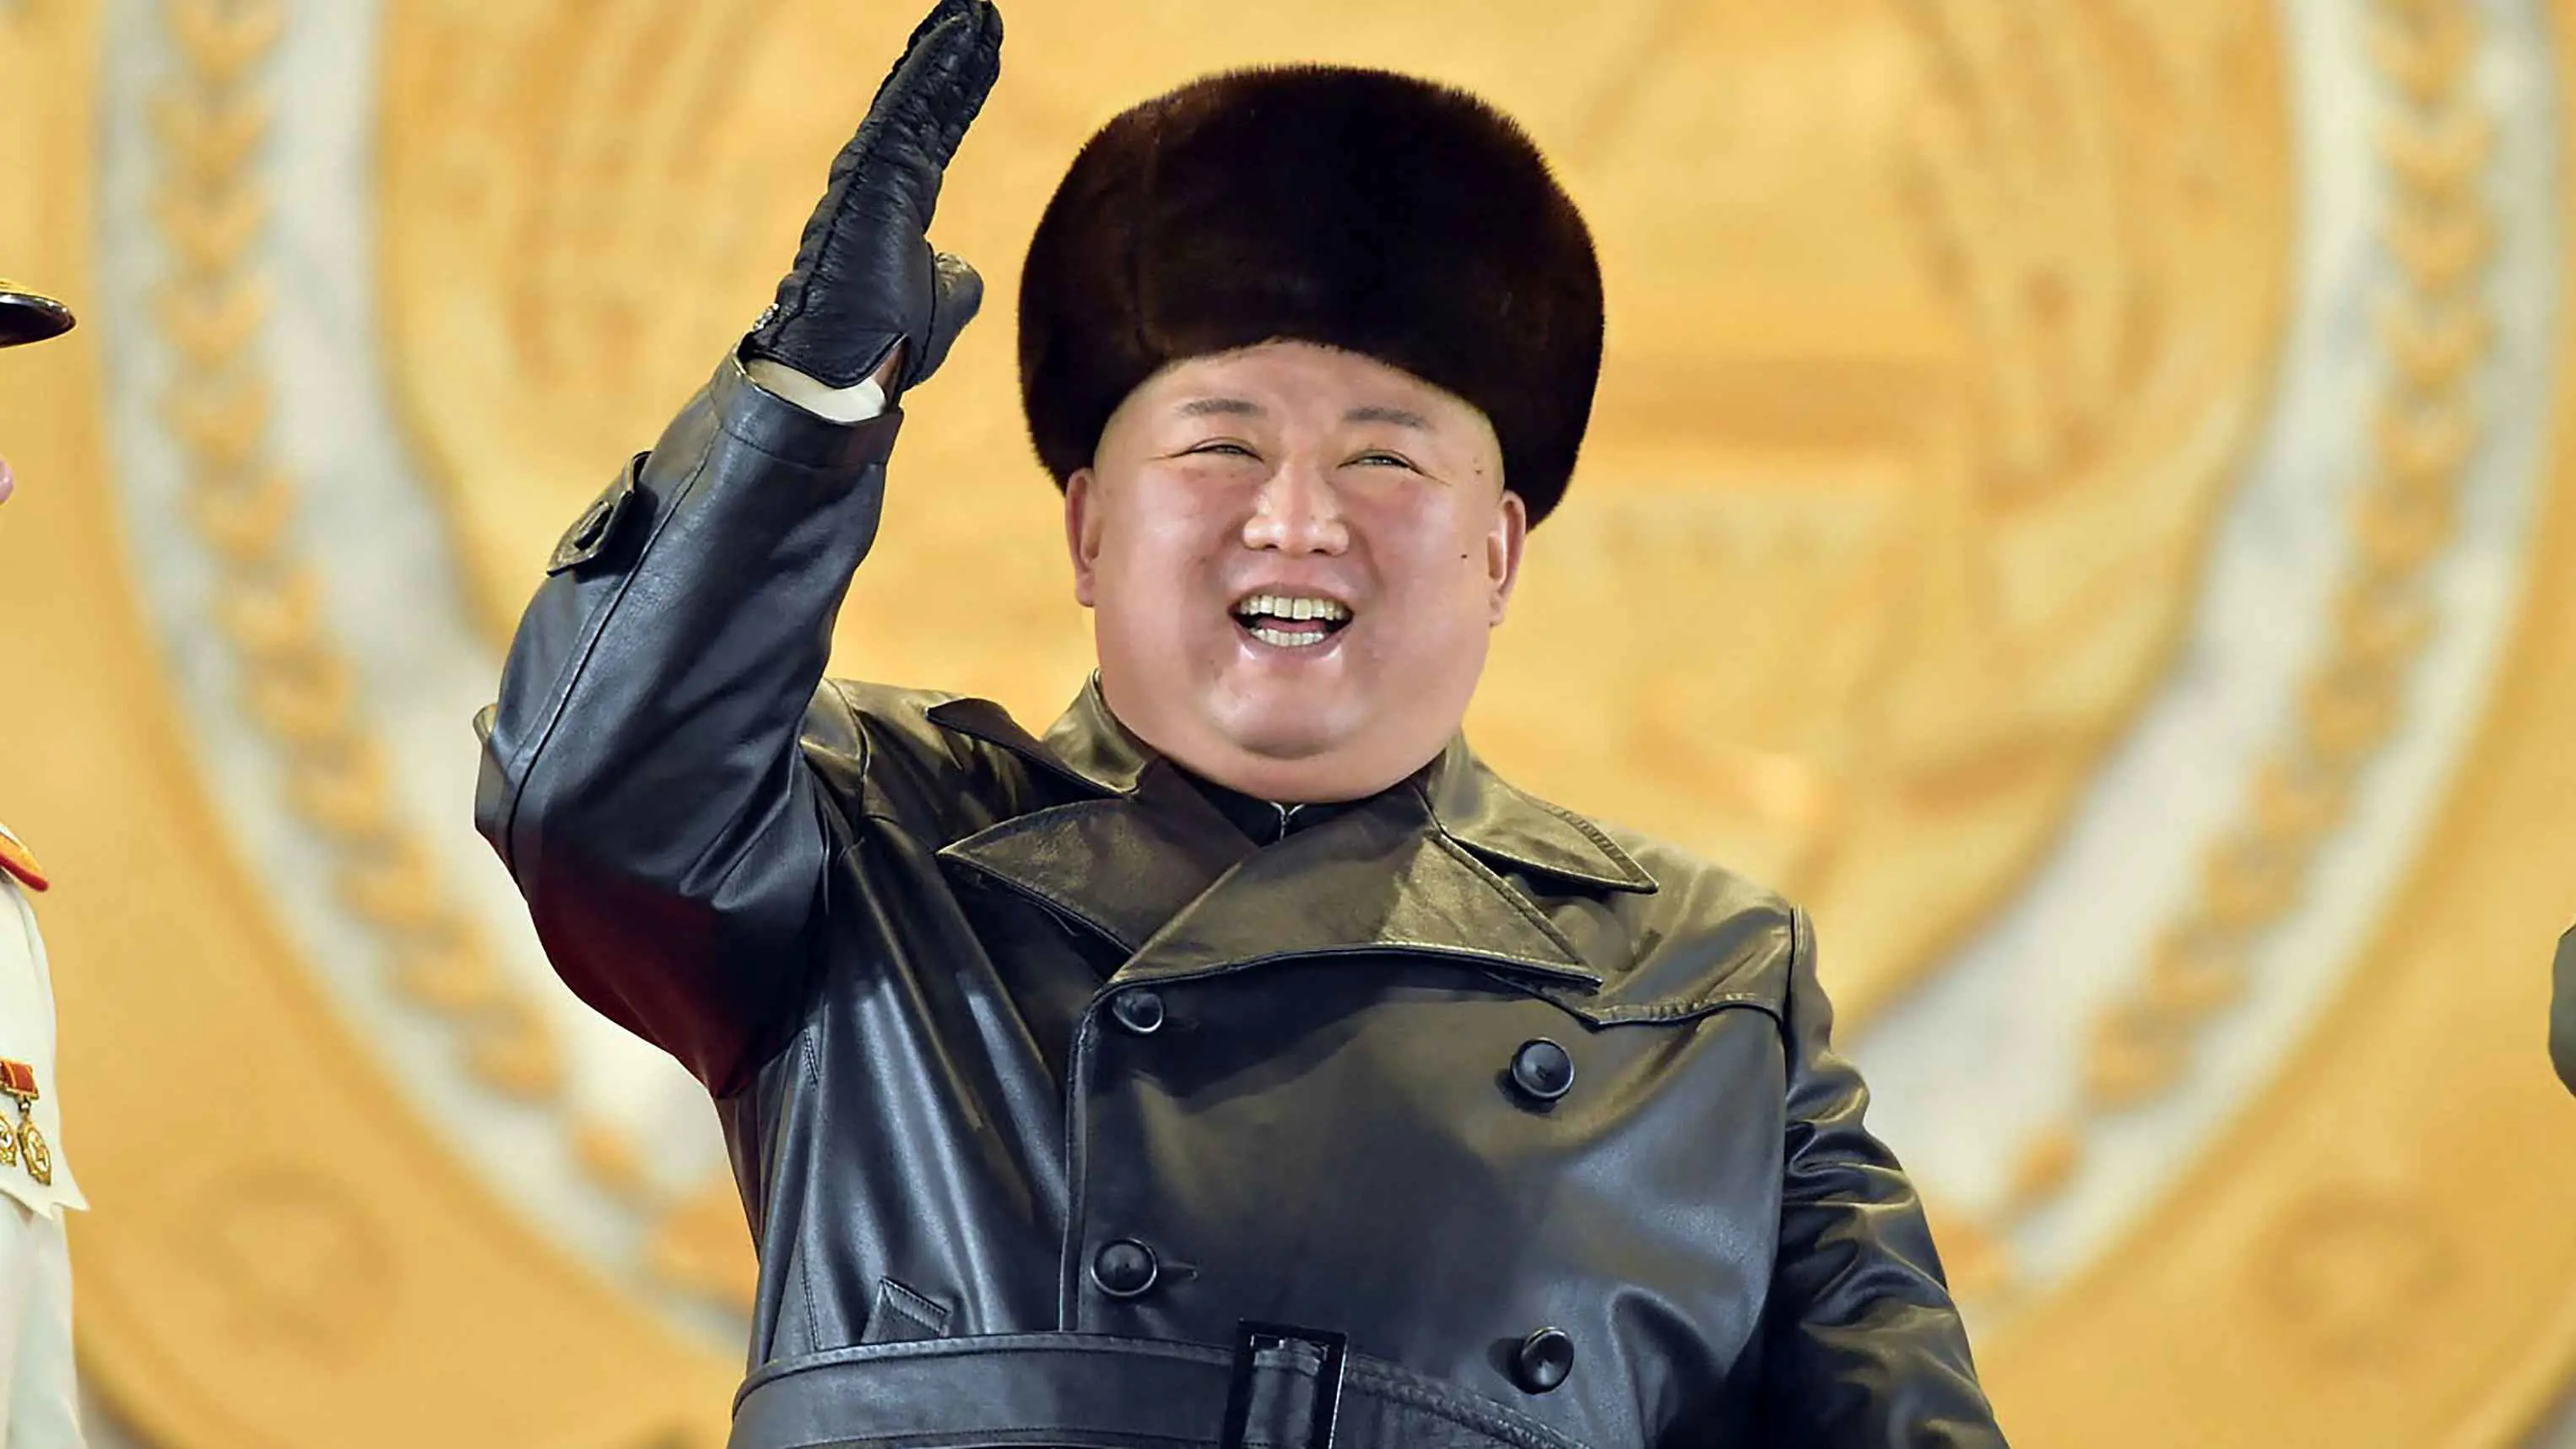 الكشف عن وسيلة جديدة لتمجيد رئيس كوريا الشمالية (صورة)